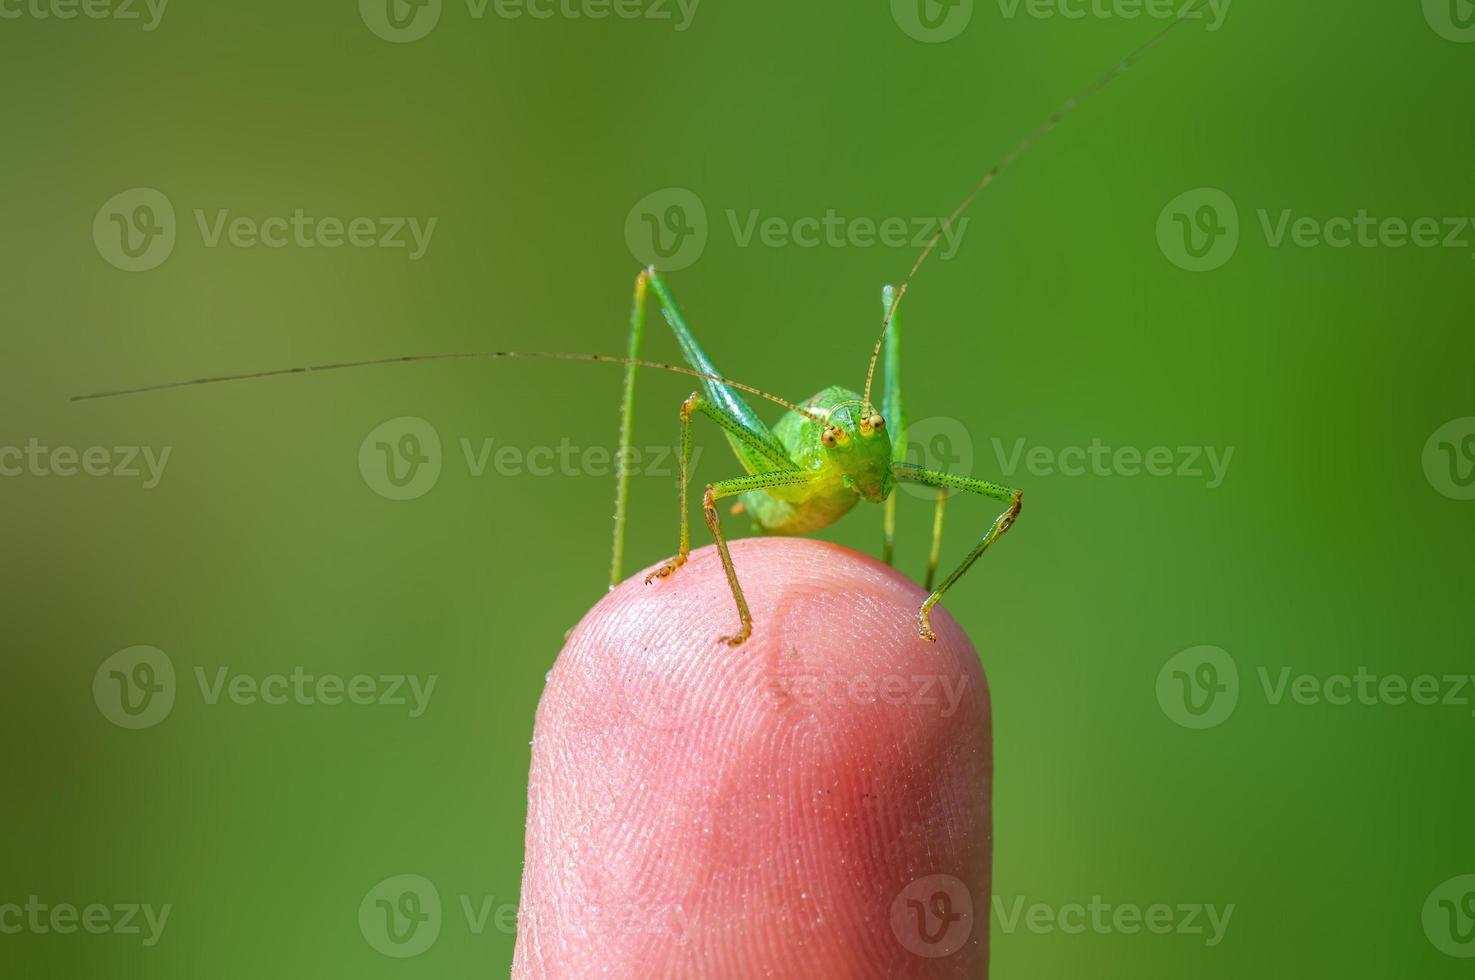 eine grüne heuschrecke sitzt auf einem finger und wärmt sich auf foto